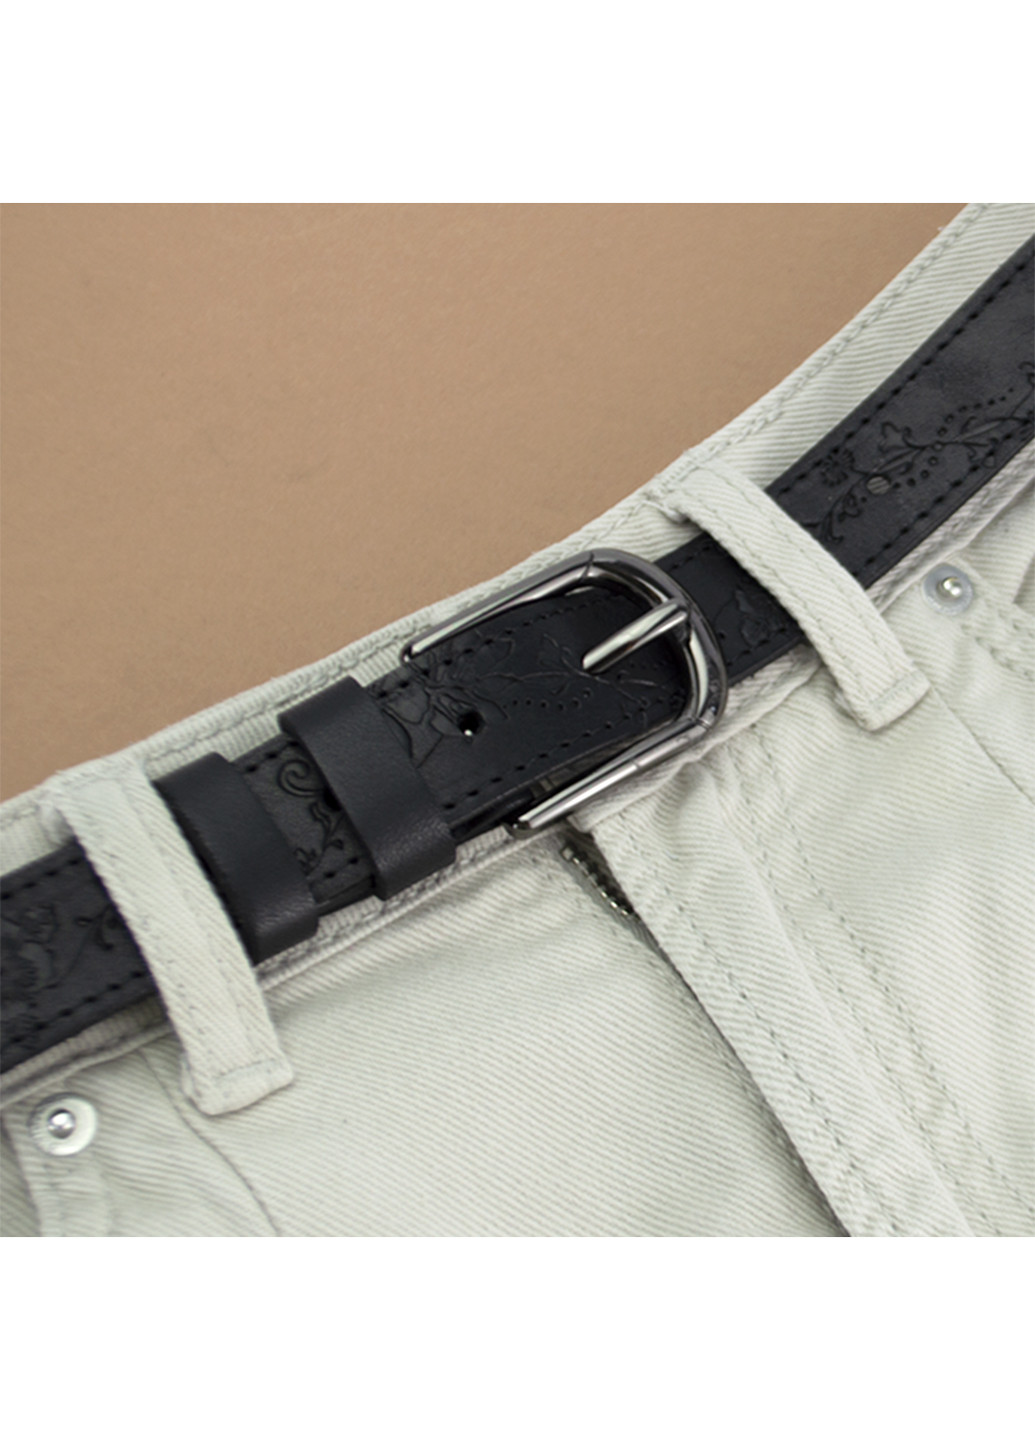 Ремень женский кожаный с цветами SF-255 черный (120 см) SFIP (253134468)